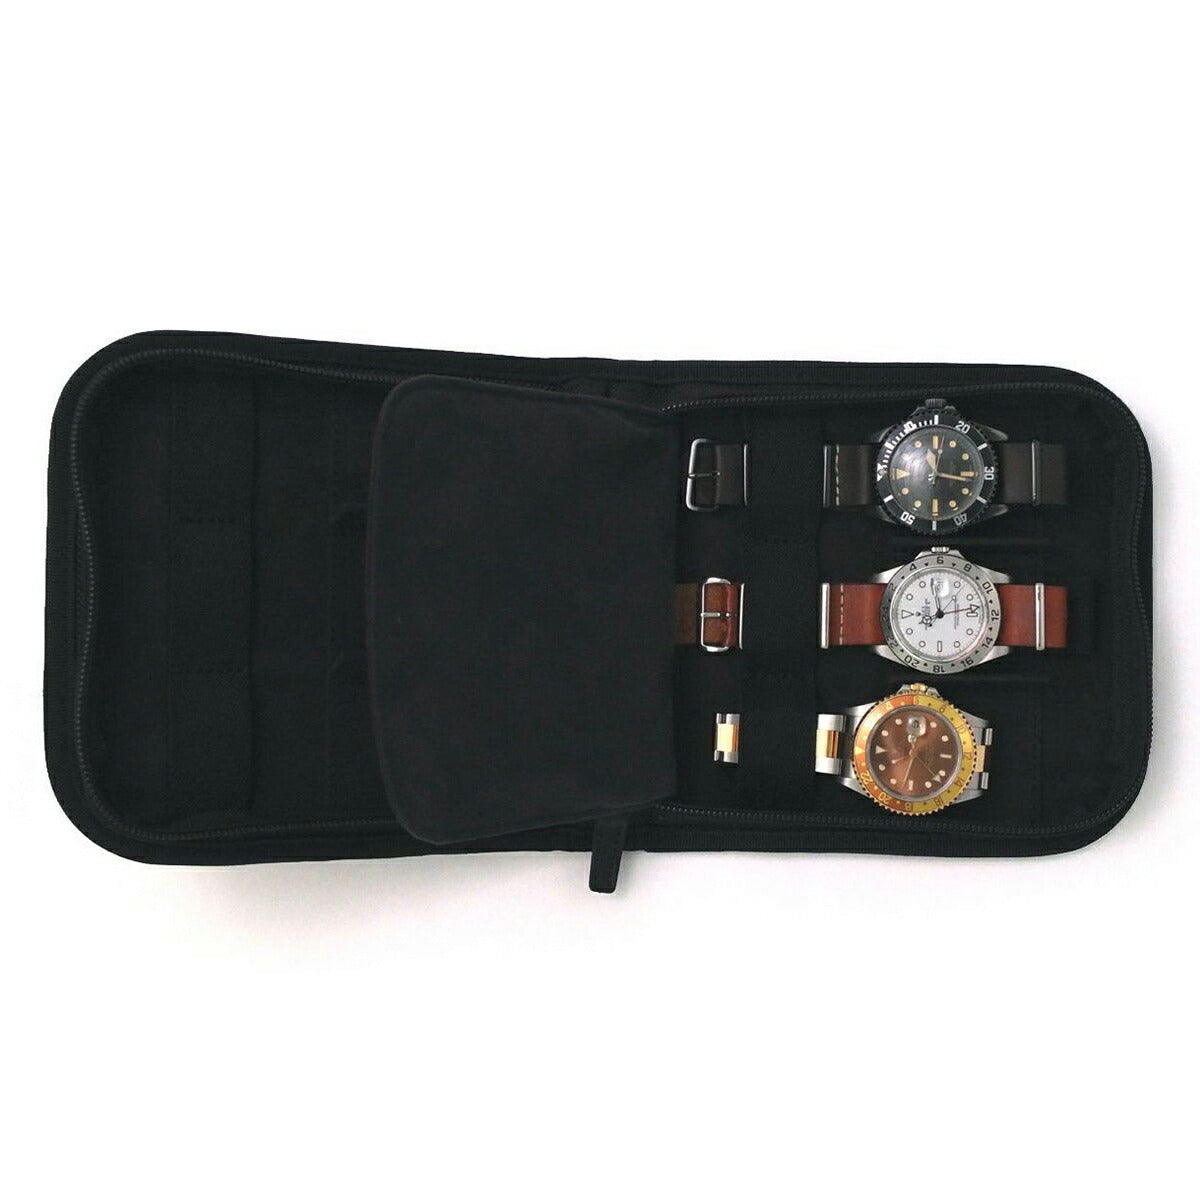 ヴァーグウォッチ VAGUE WATCH Co. ポーター PORTER 腕時計ケース 時計収納ケース 6本用 ブラック WC-M-001